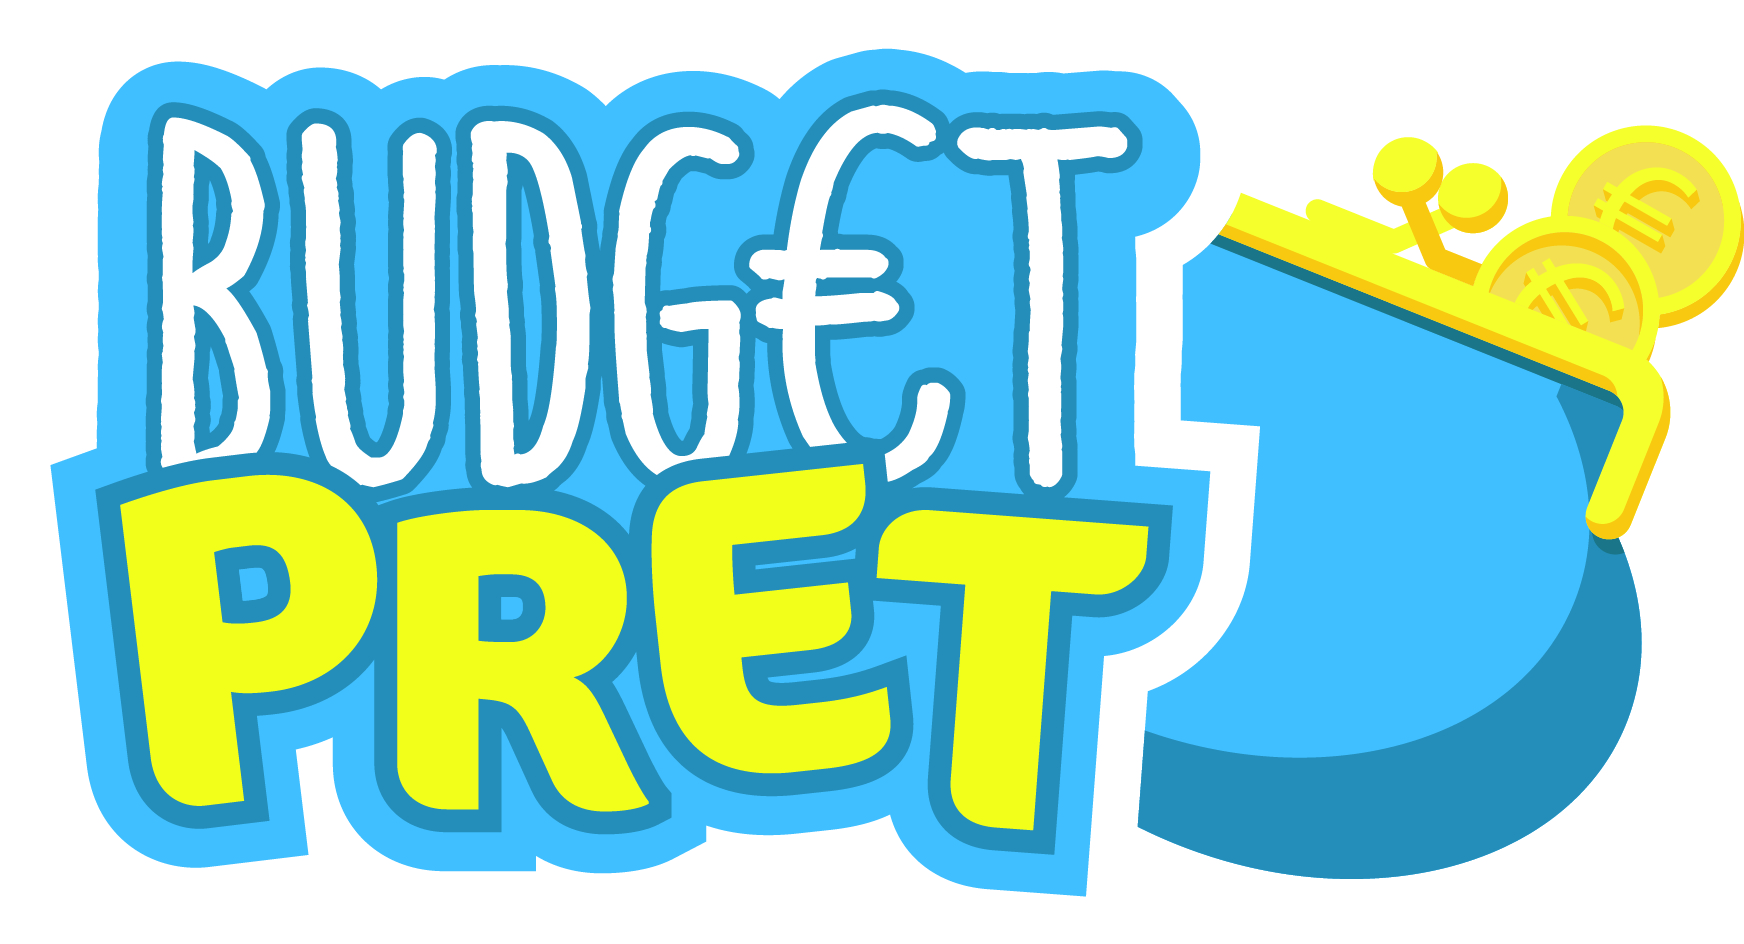 budgetpret